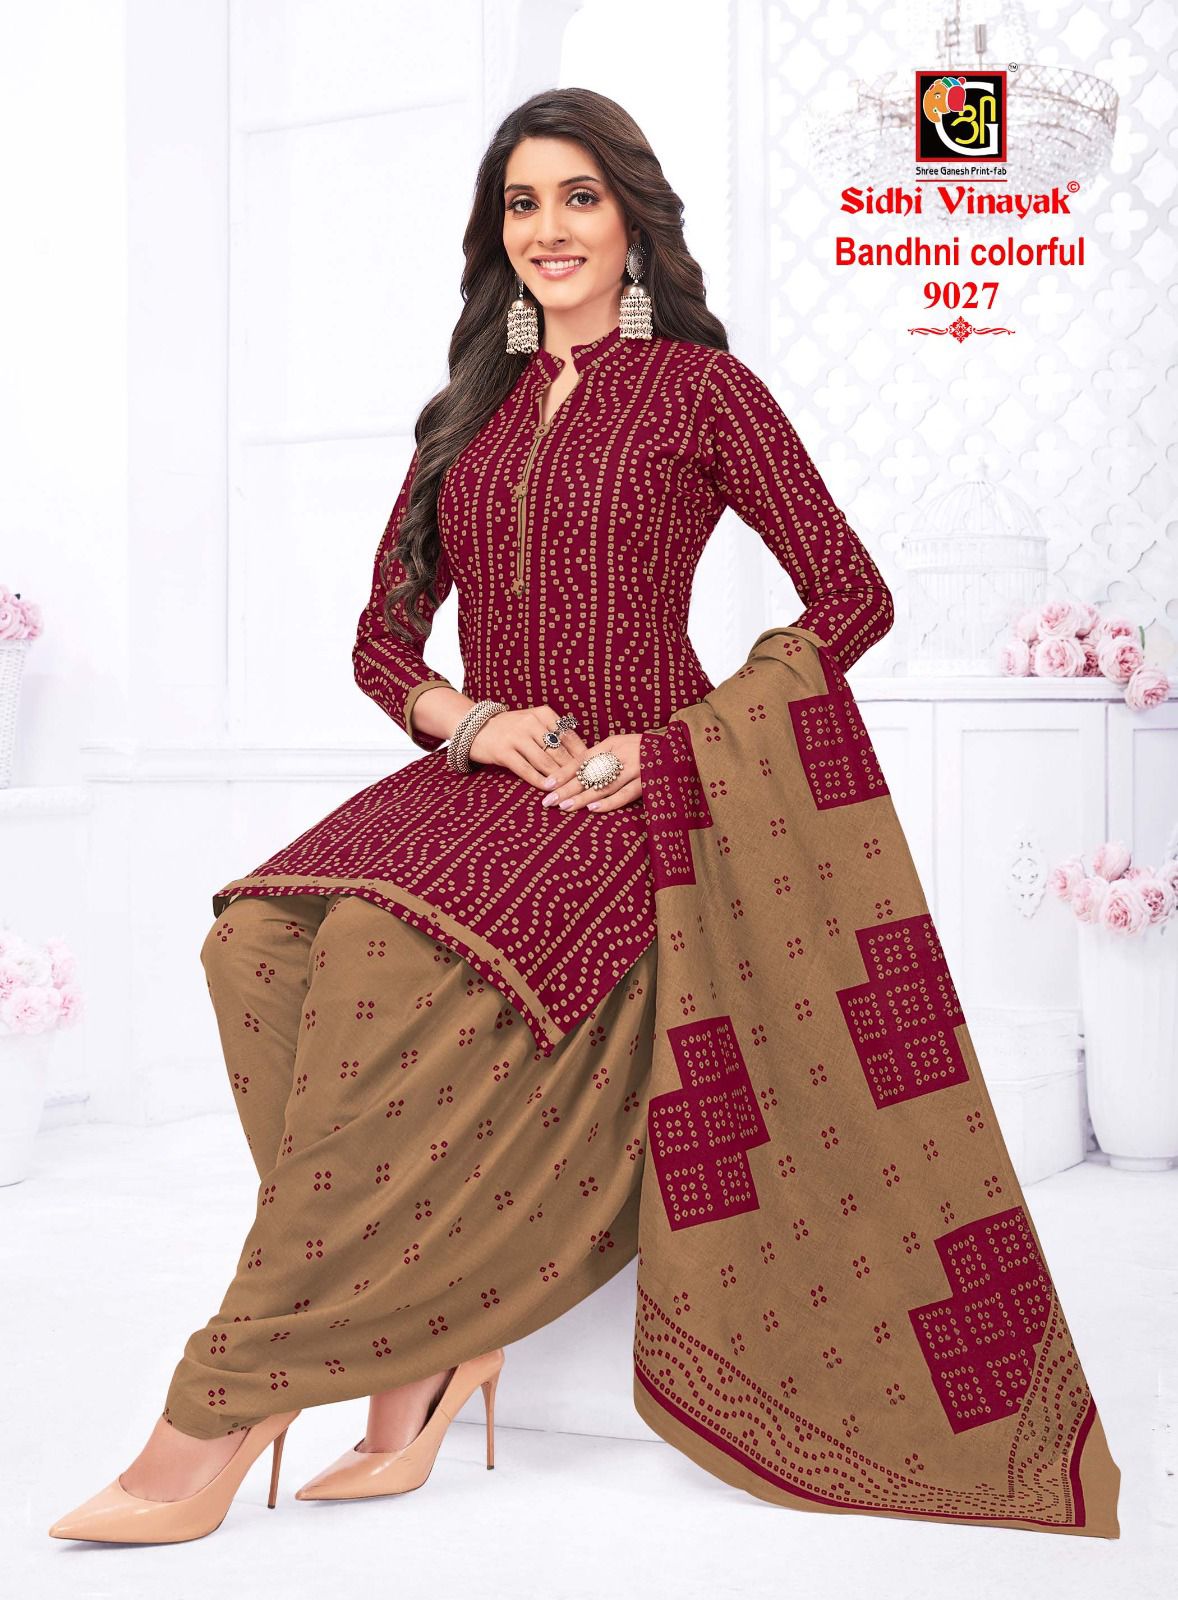 Bandhni Colorful Sidhi Vinayak Cotton Dress Material